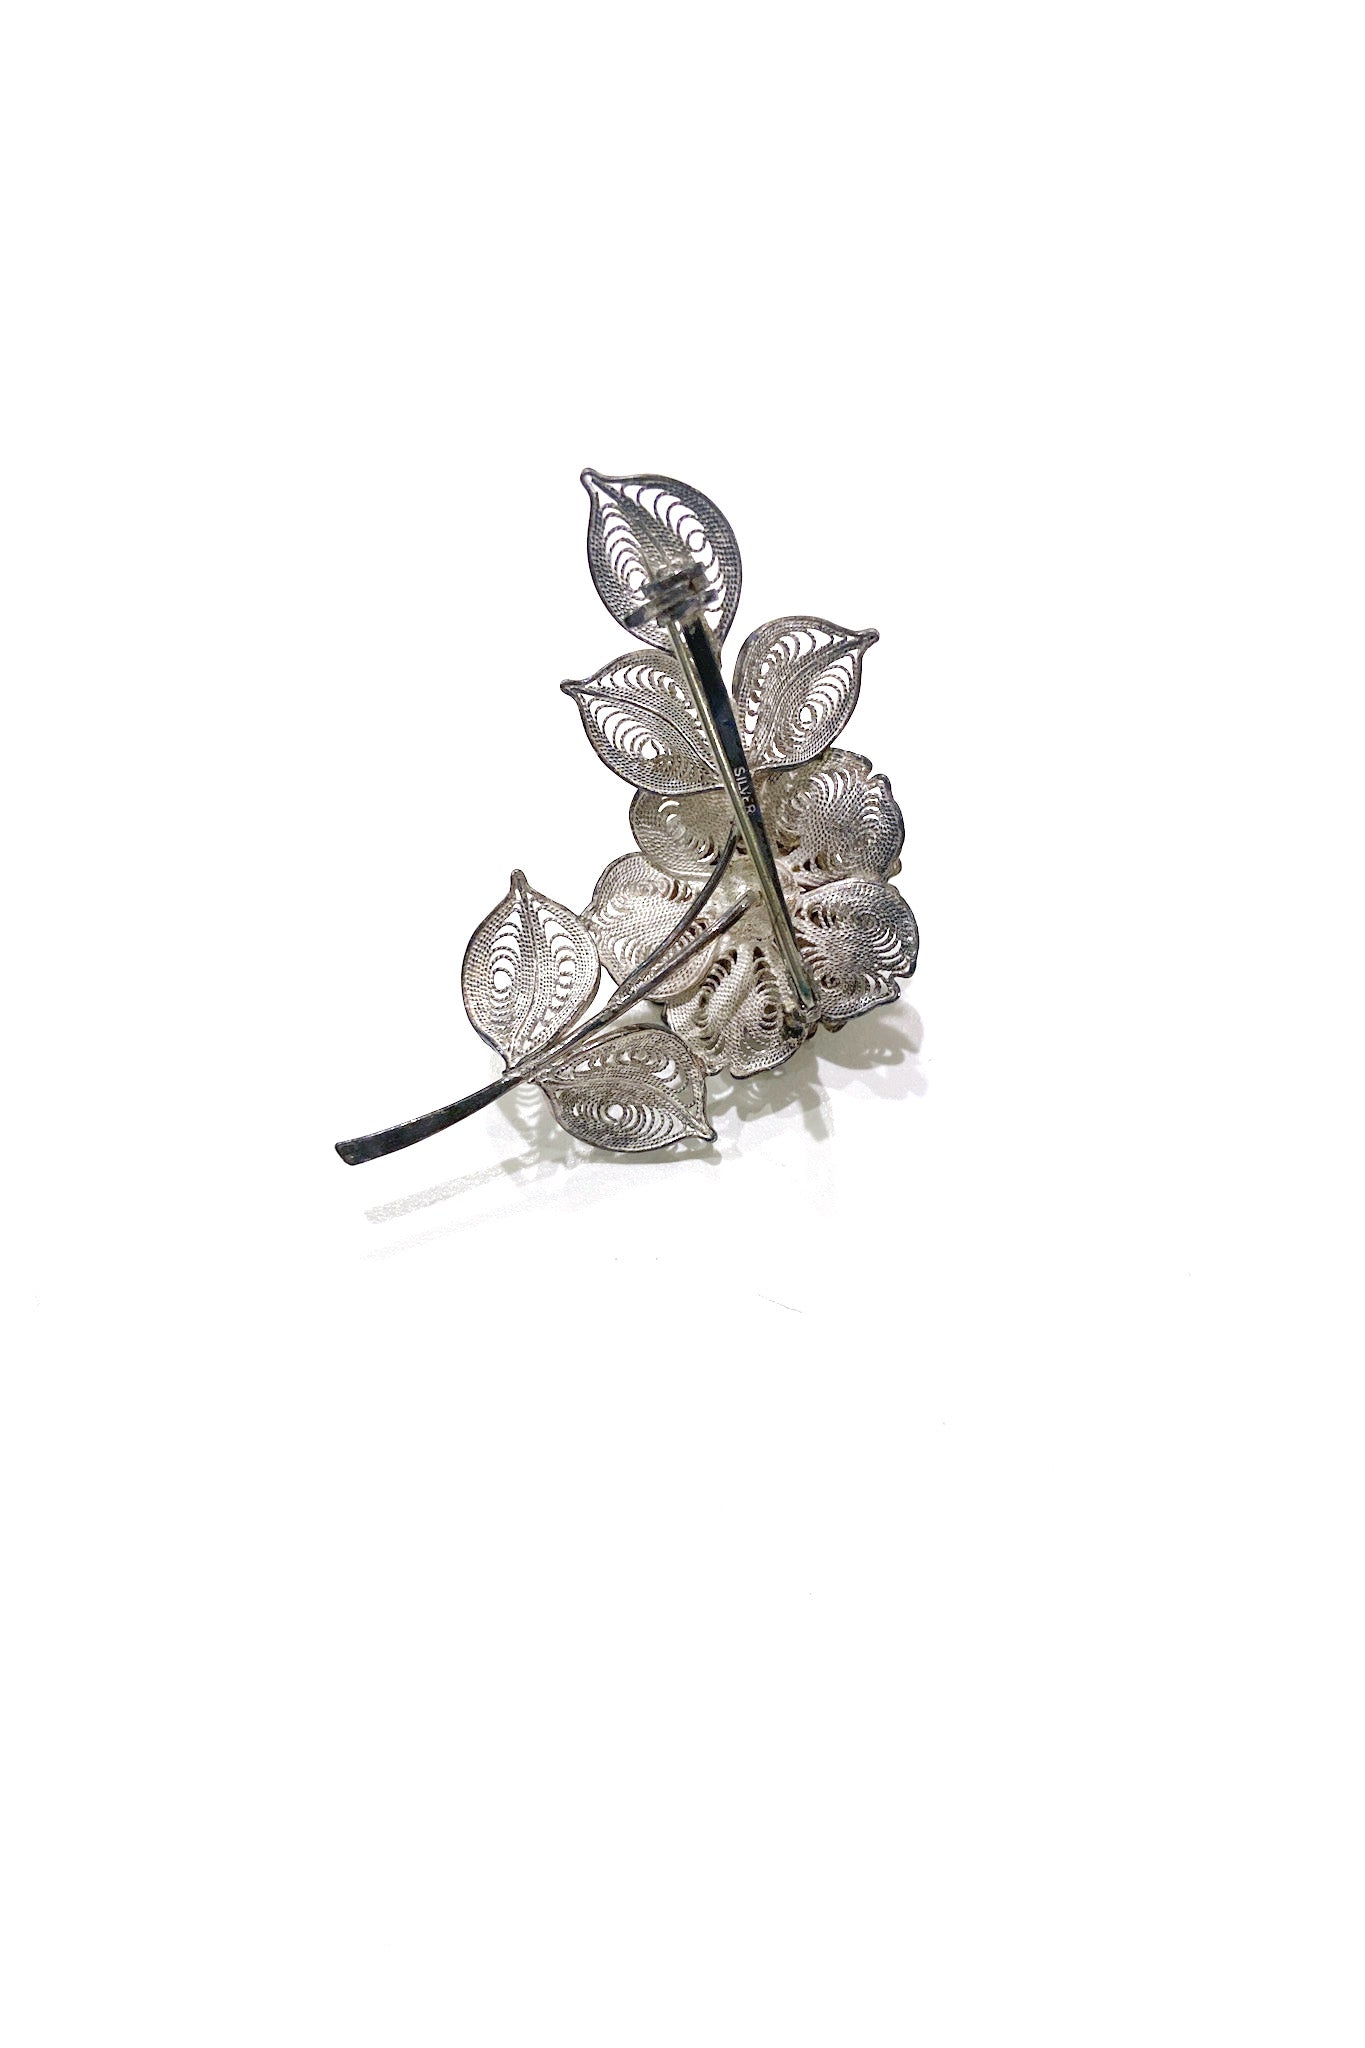 Vintage rose silver brooch バラの魅力